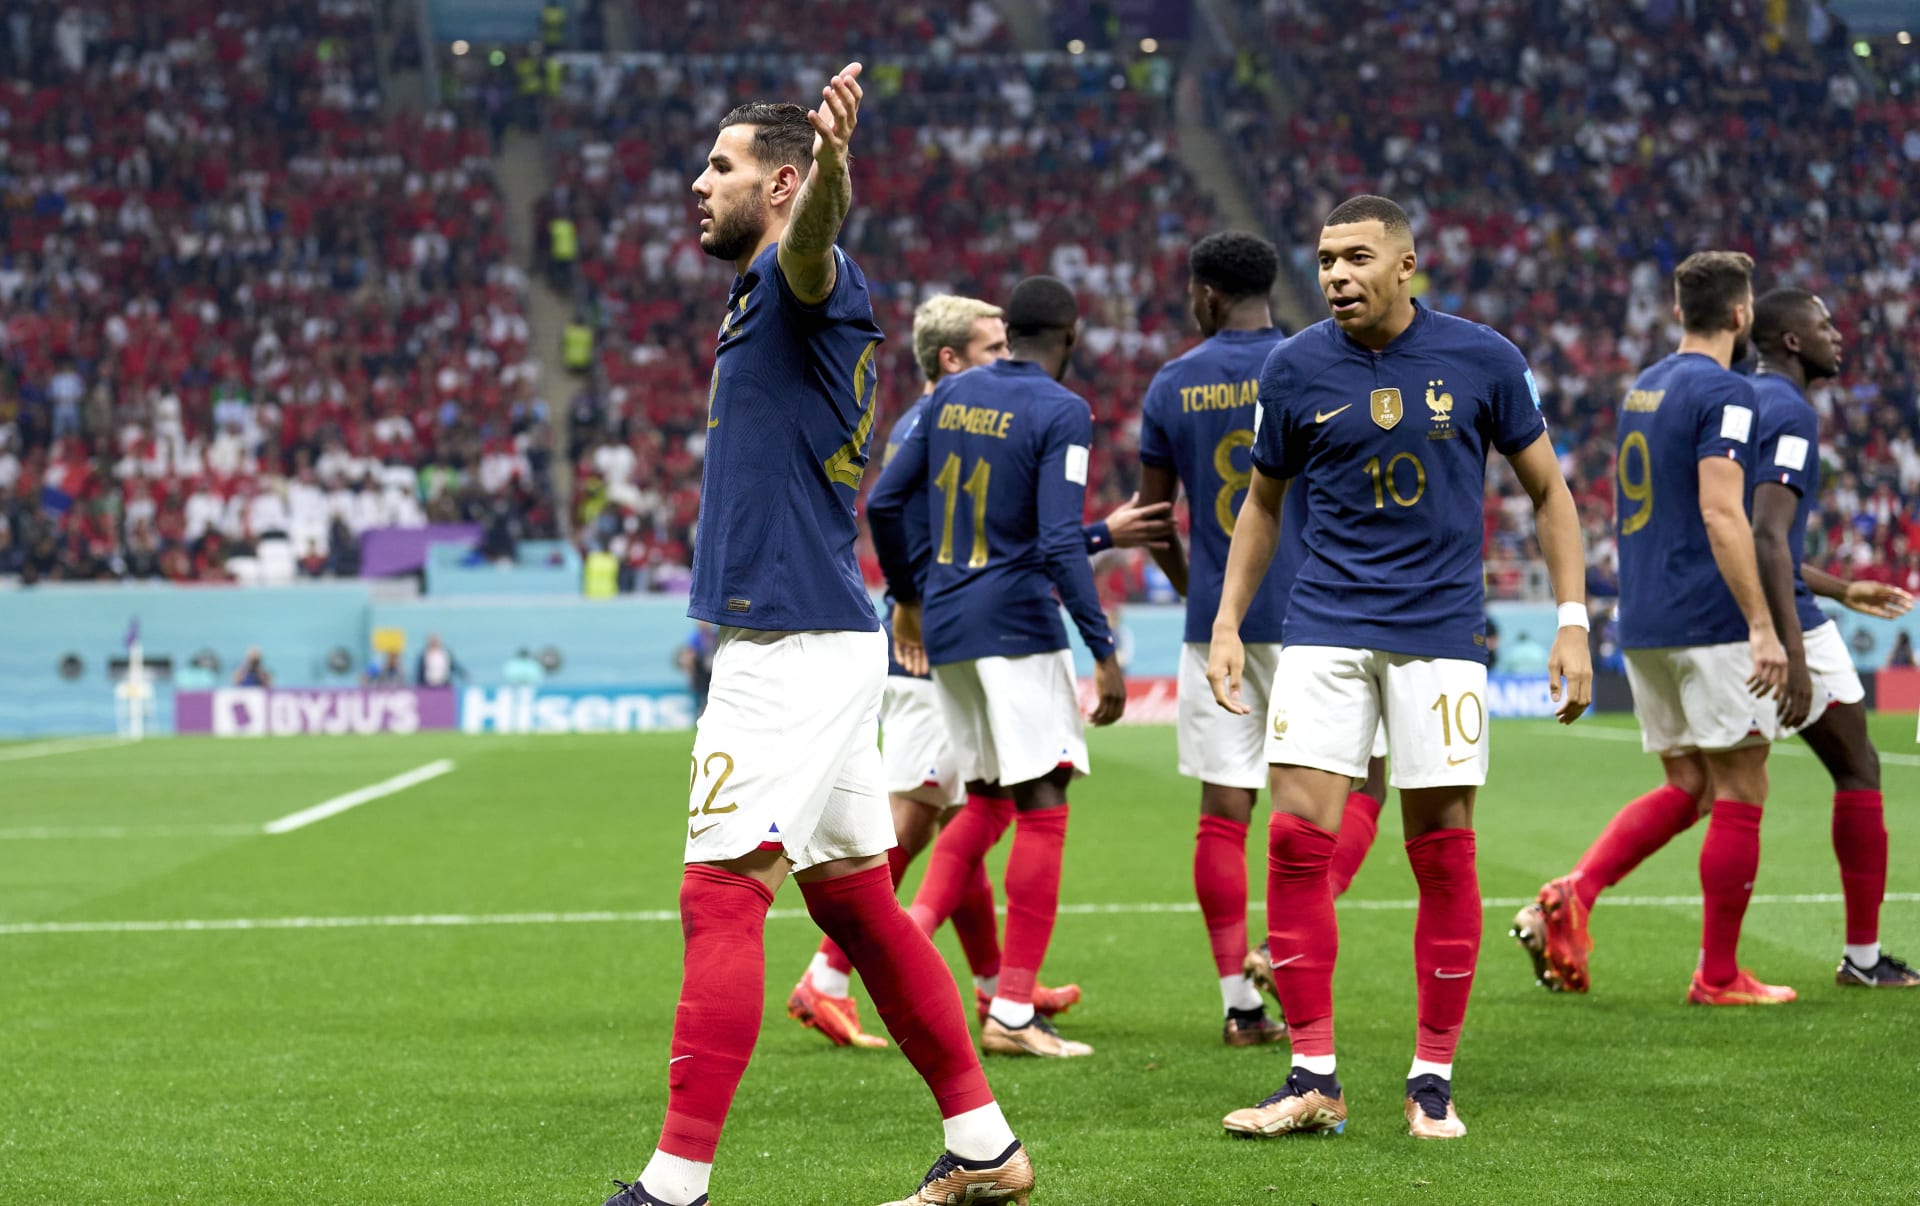 Francie je jediný zápas od obhajoby zlata.